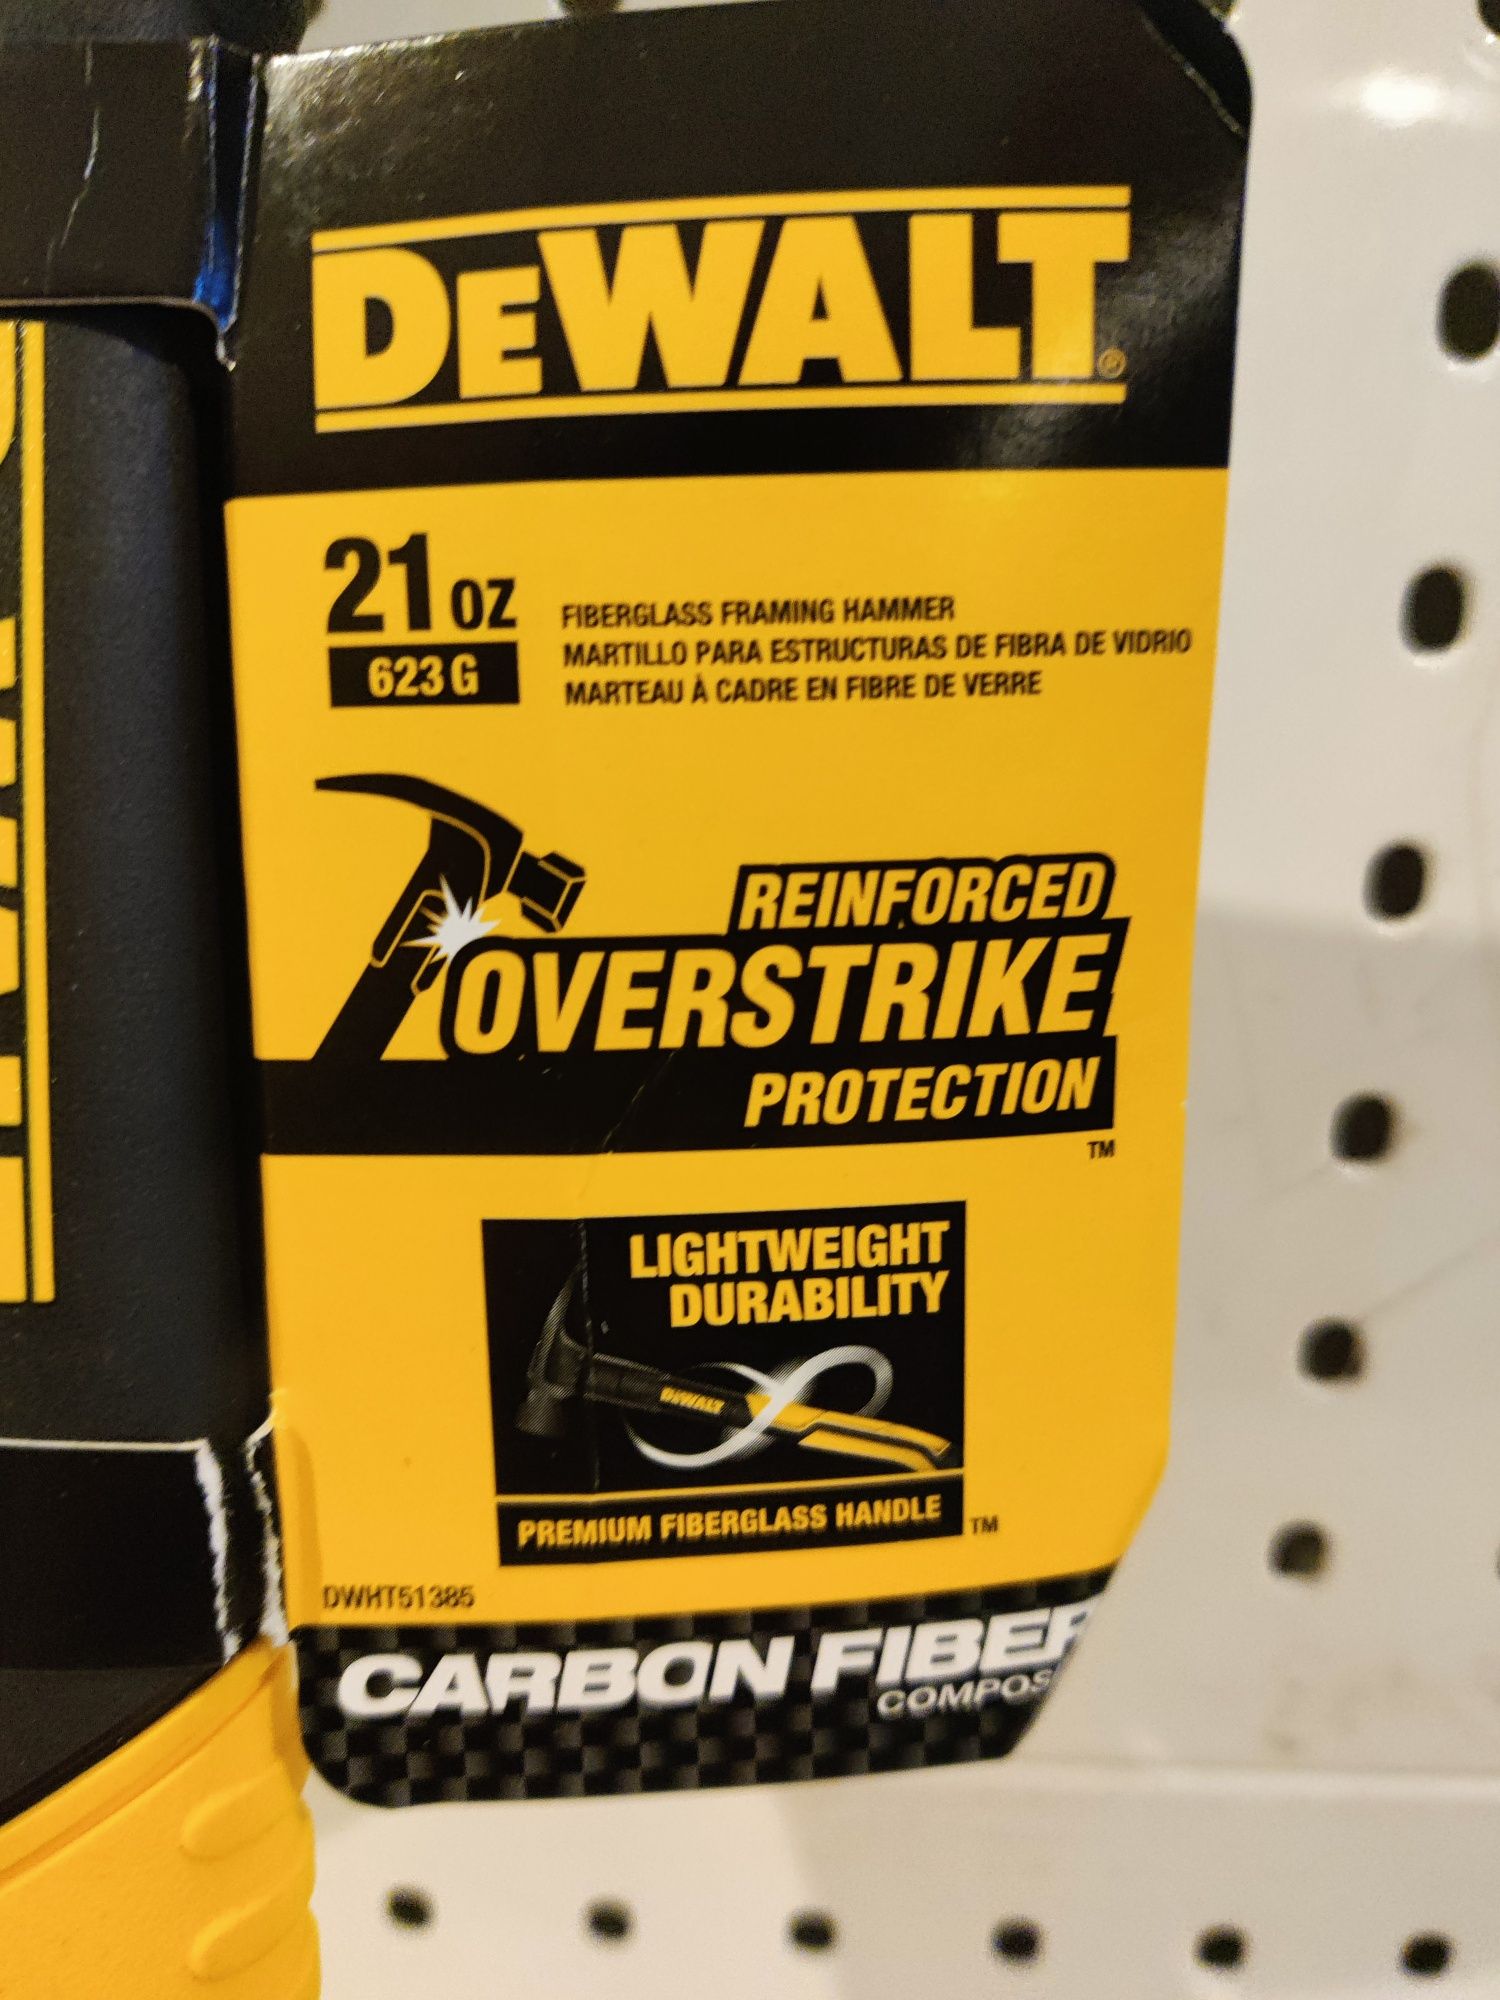 DeWalt DWHT51385 21" Carbon fiber фреймерский столярный молоток США